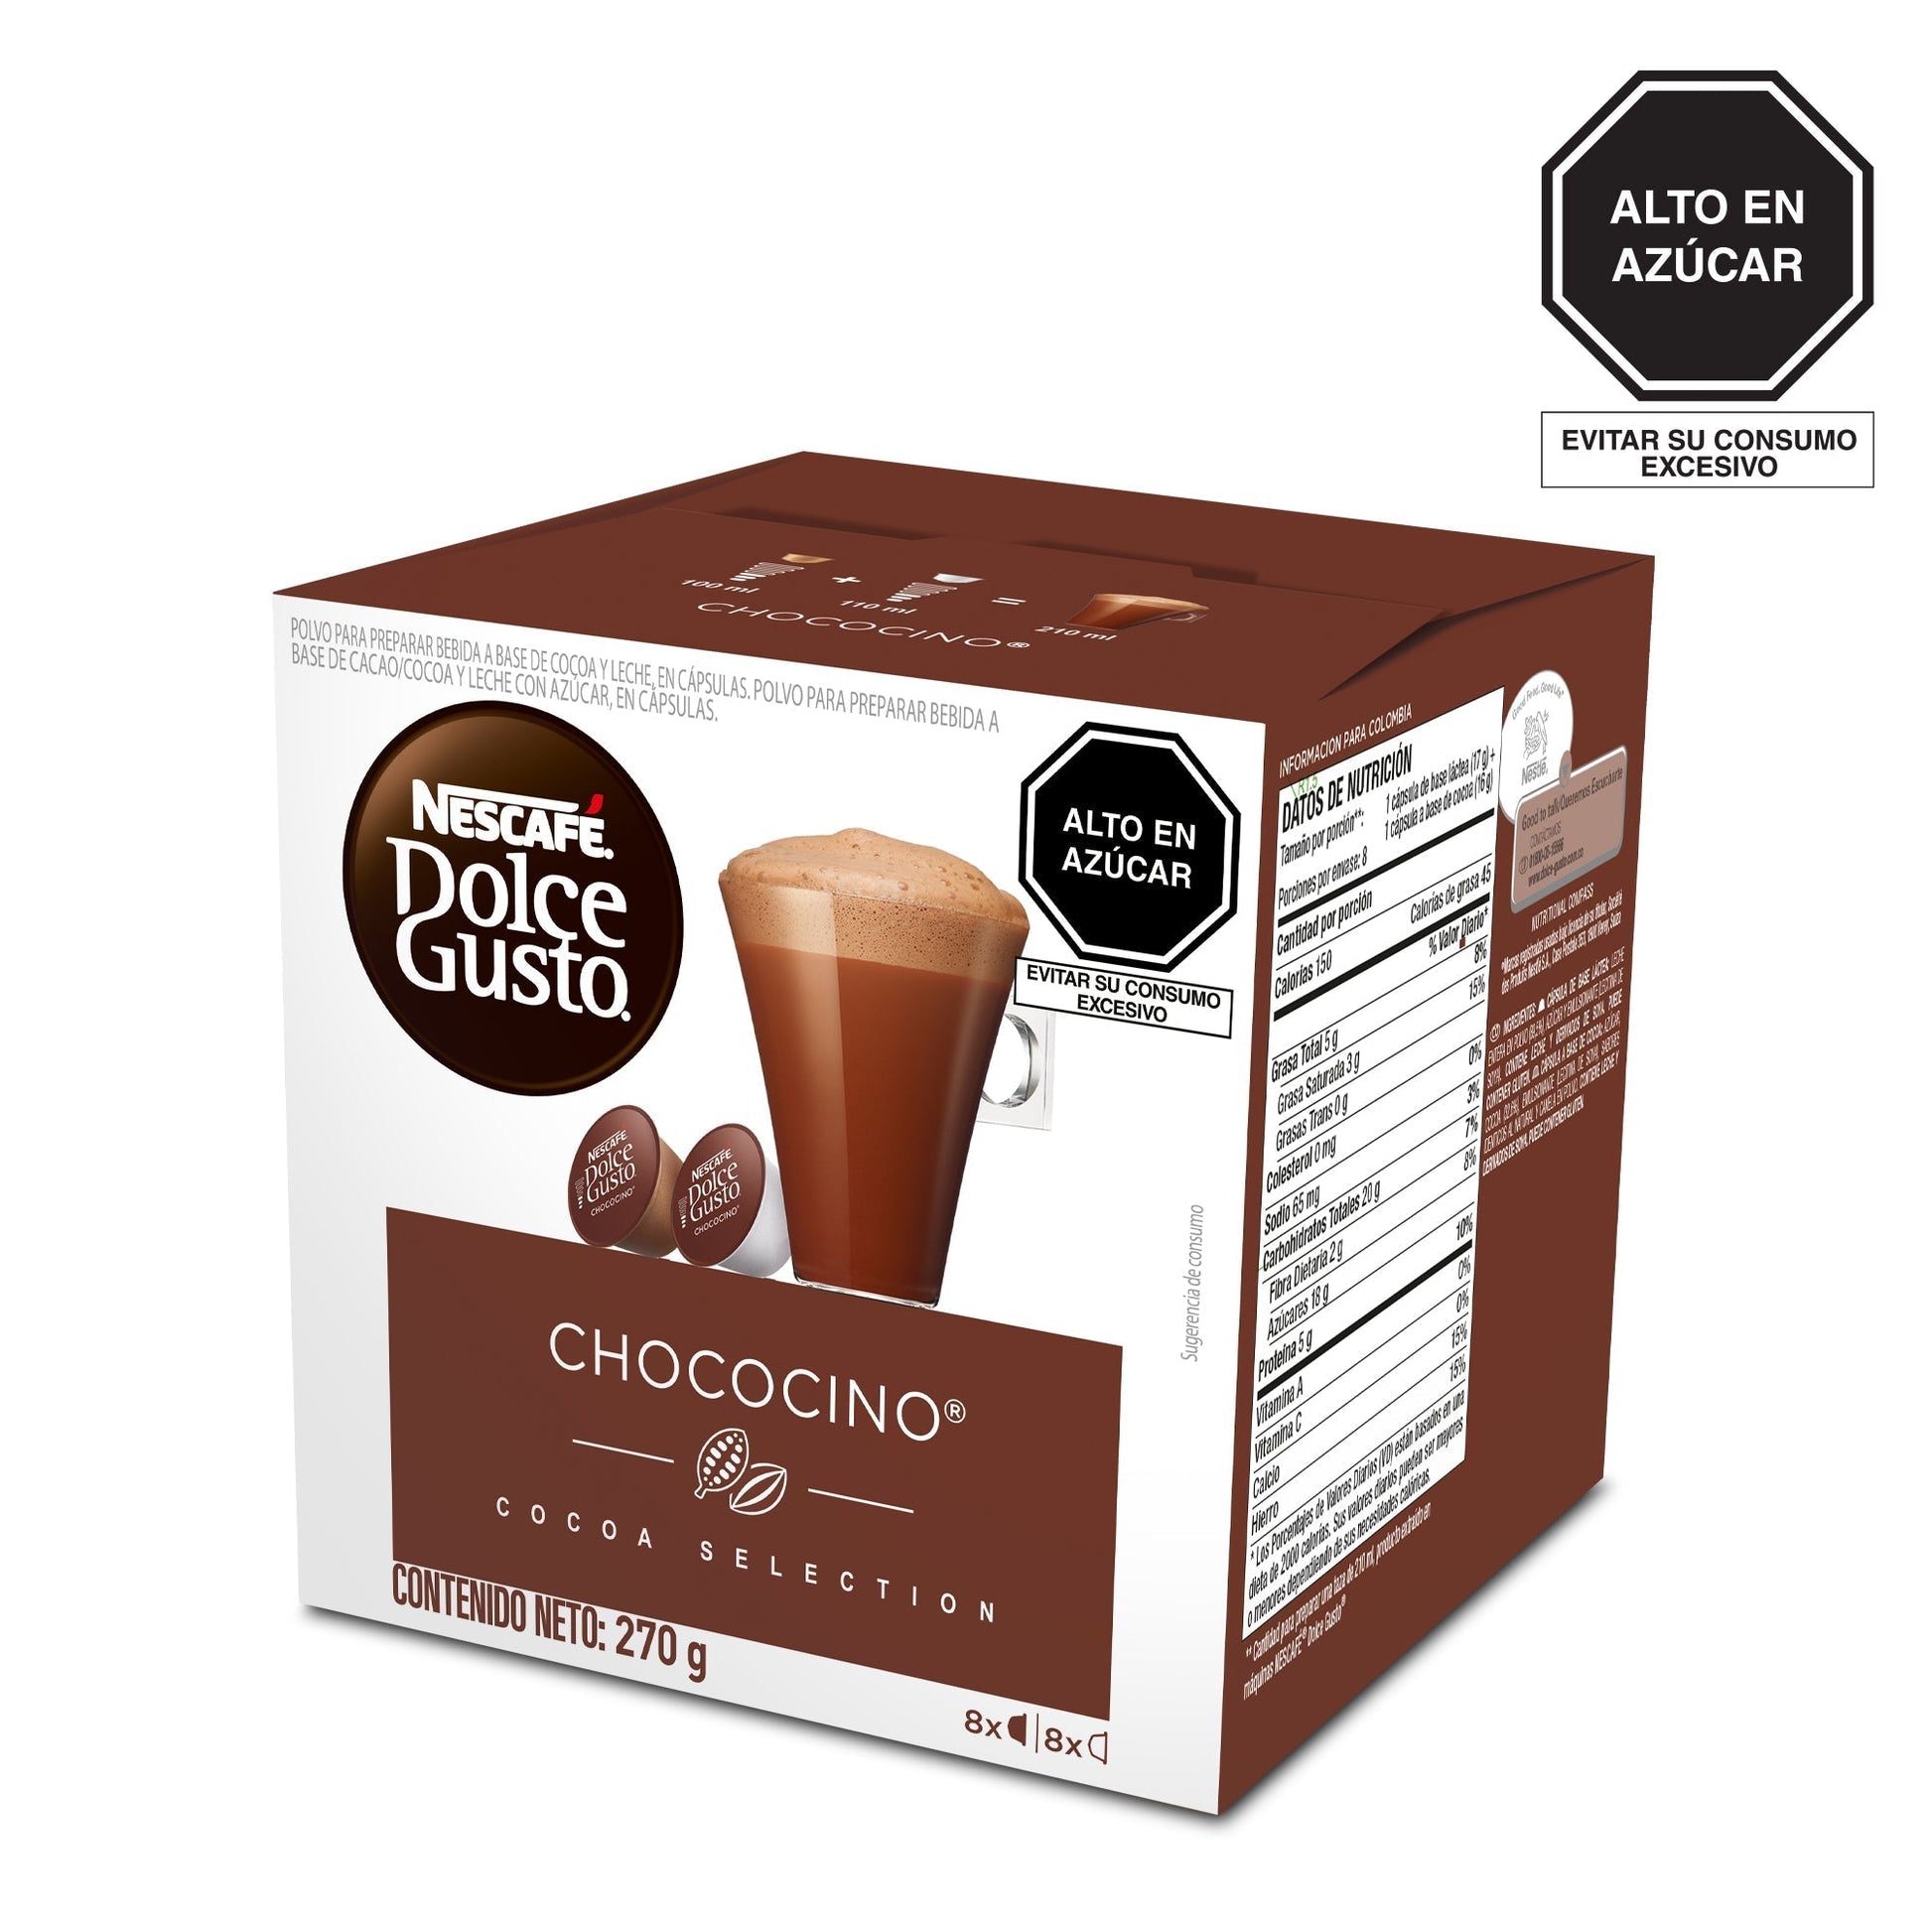 NESCAFÉ® Dolce Gusto® Chococino Chocolate Caliente Caja de 16 Cápsulas